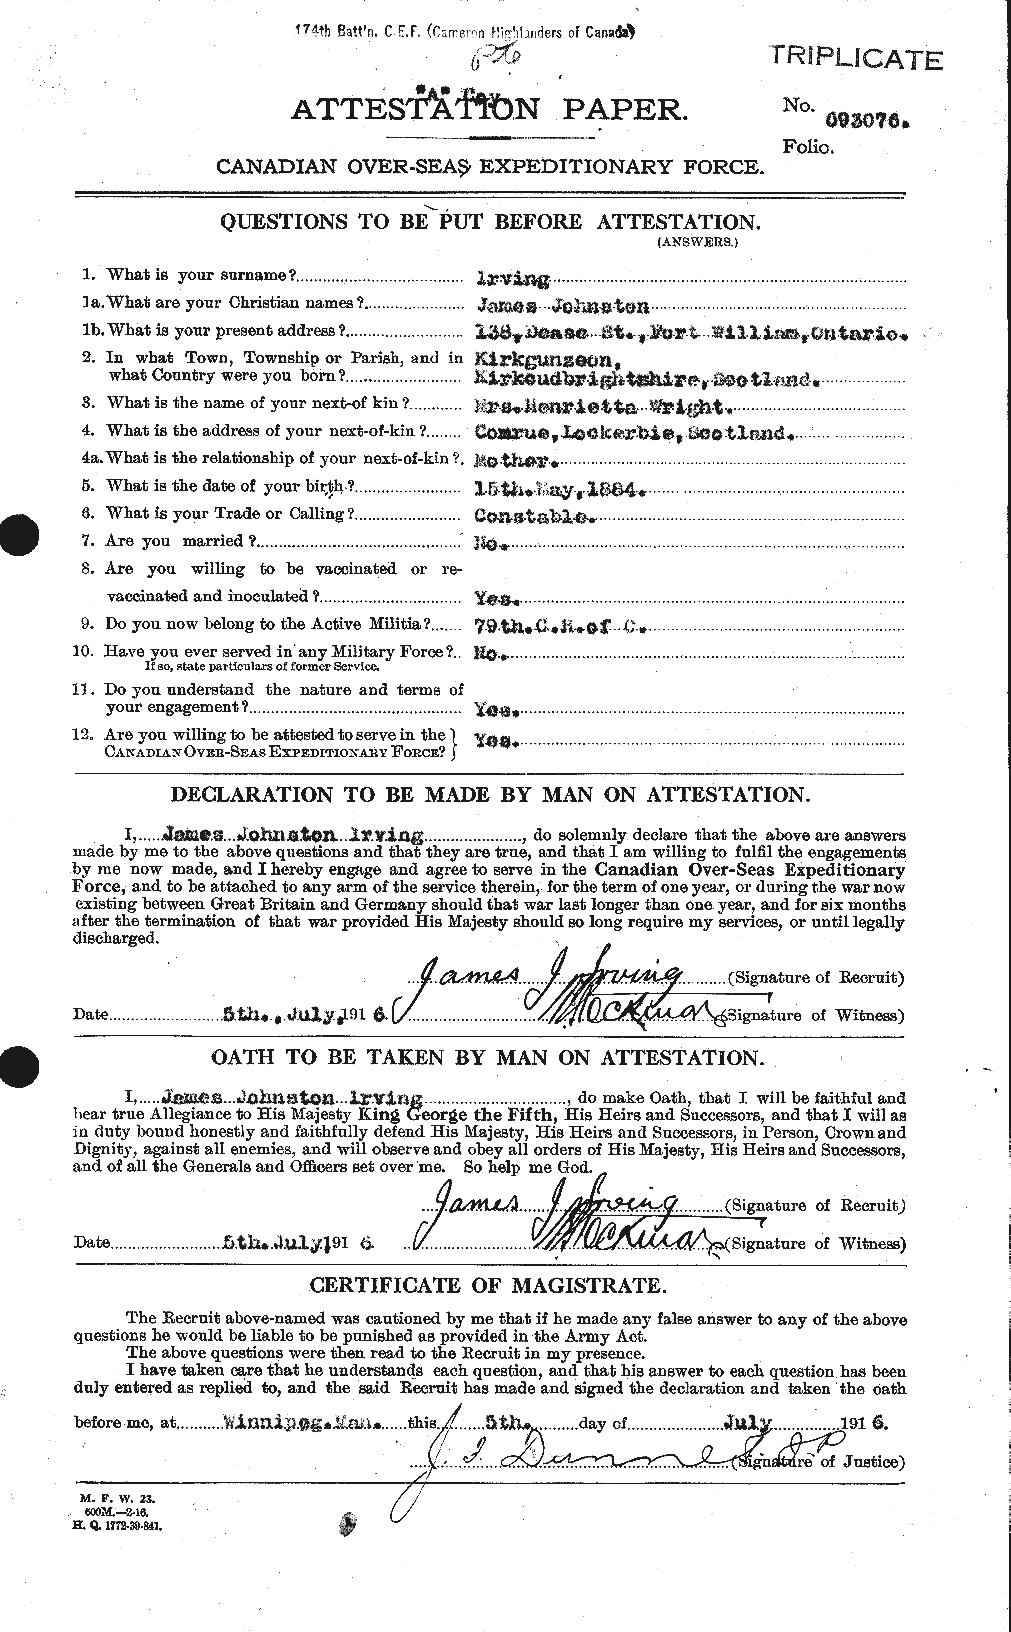 Dossiers du Personnel de la Première Guerre mondiale - CEC 412673a